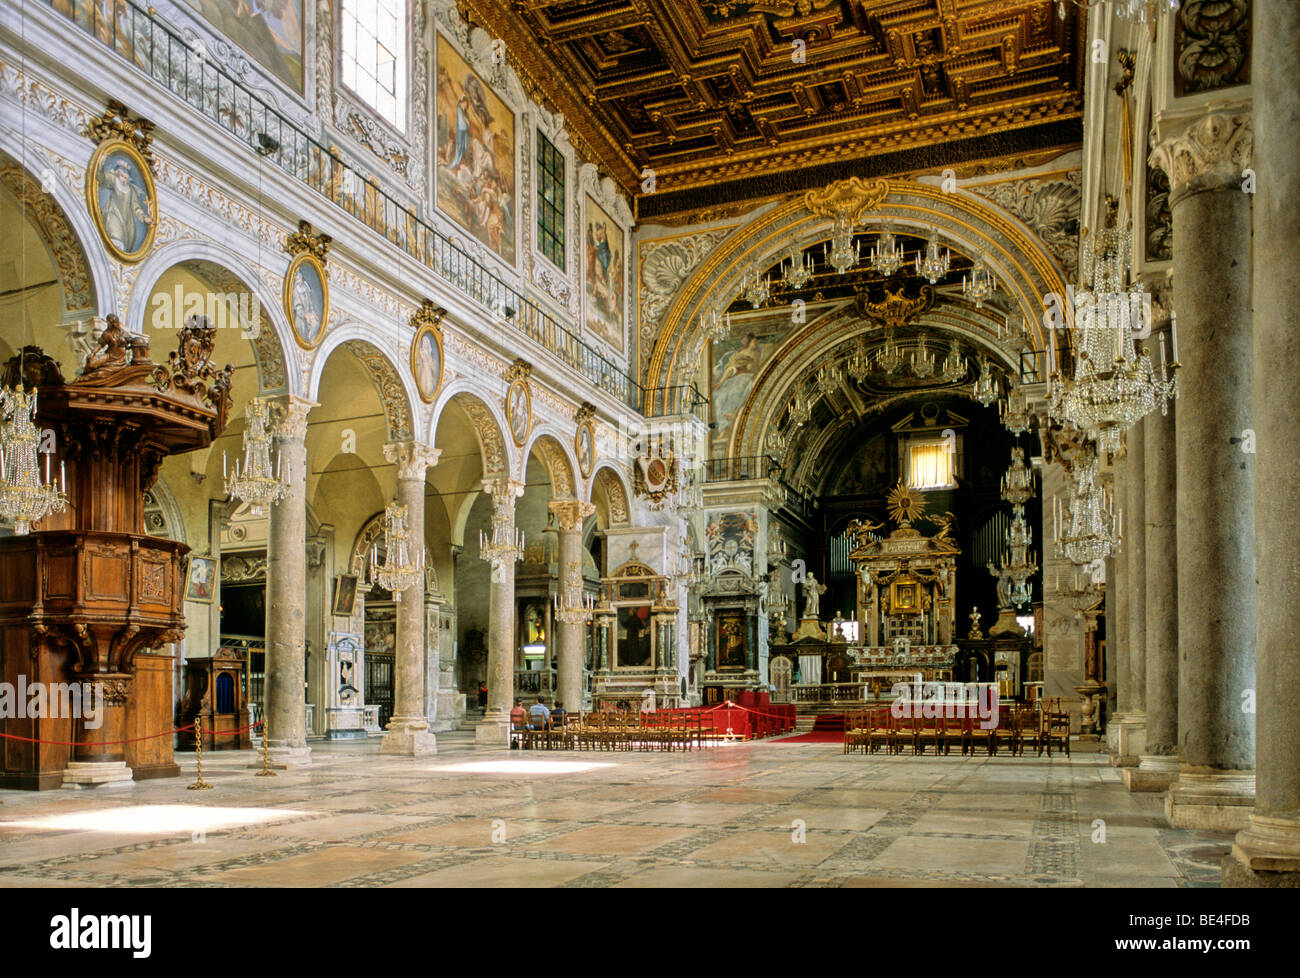 Navata, altare, Basilica di Santa Maria in Aracoeli, Roma, Lazio, l'Italia, Europa Foto Stock